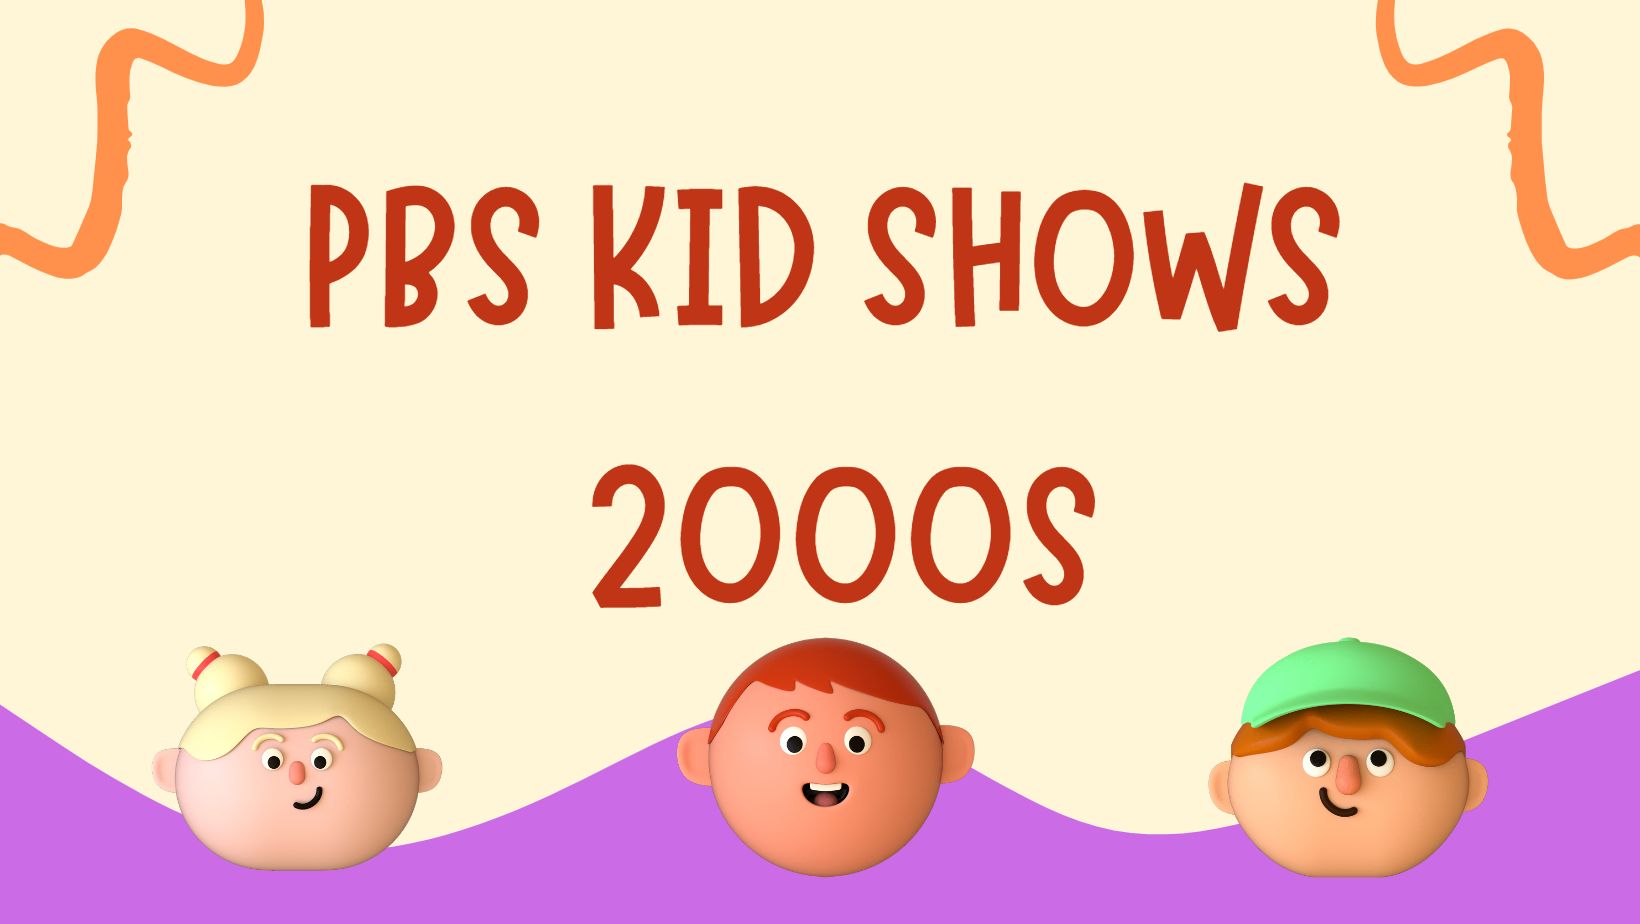 Explore PBS Kids Shows 2000s: A Nostalgic Walk Down Memory Lane